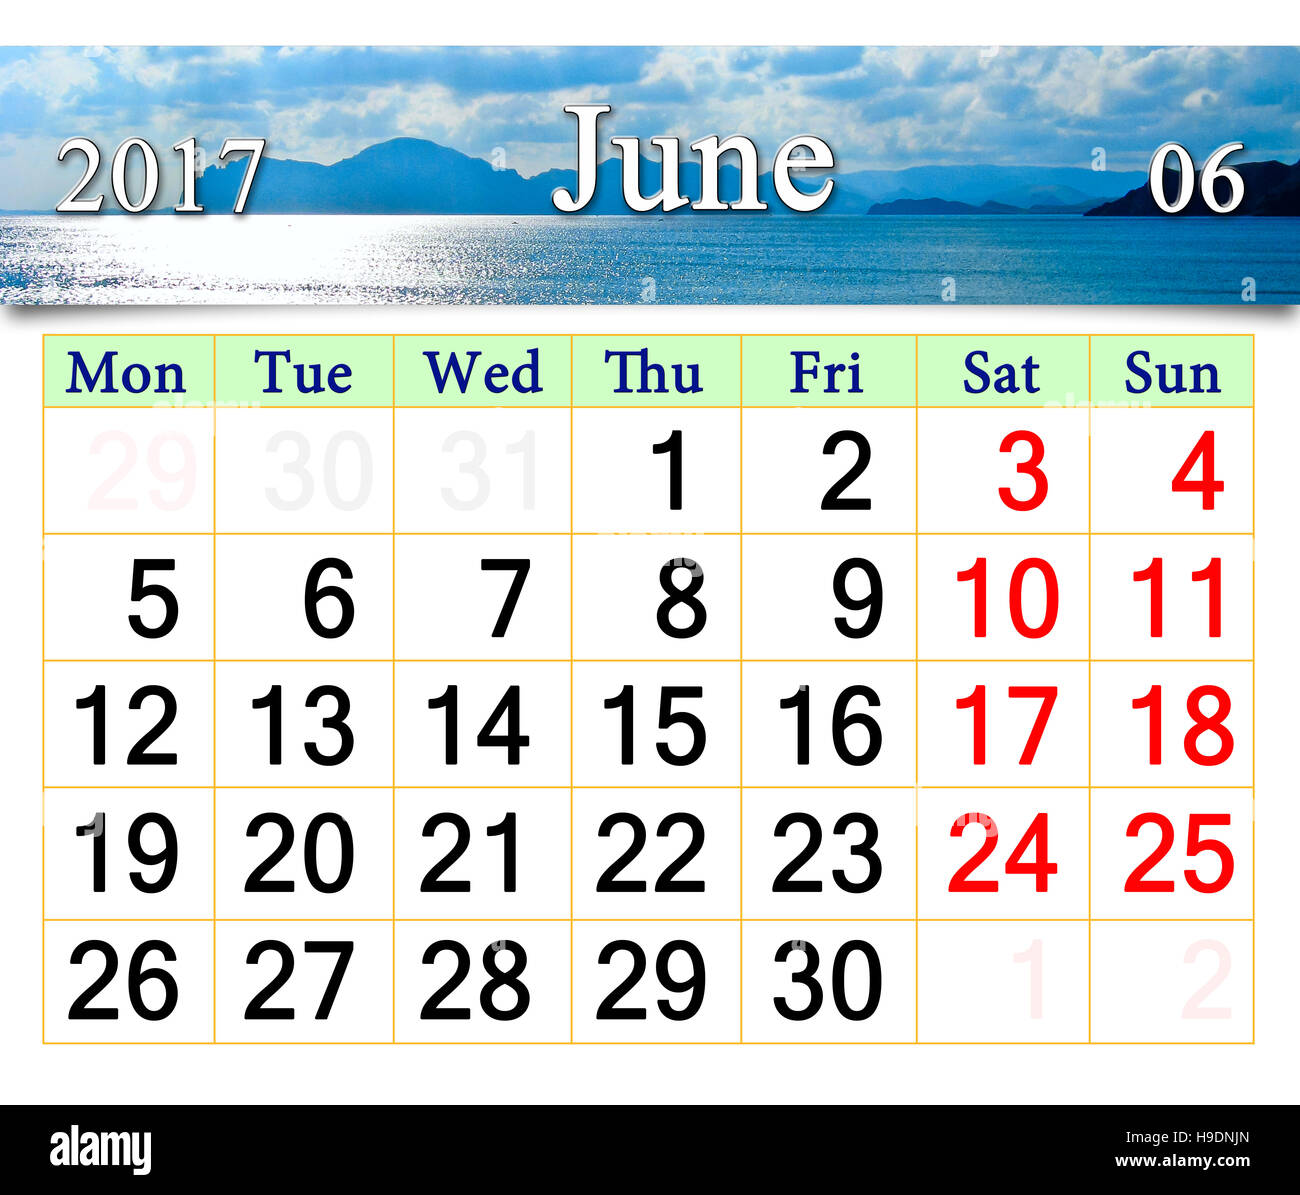 Calendrier de juin 2017 à l'image de mer et montagne Banque D'Images